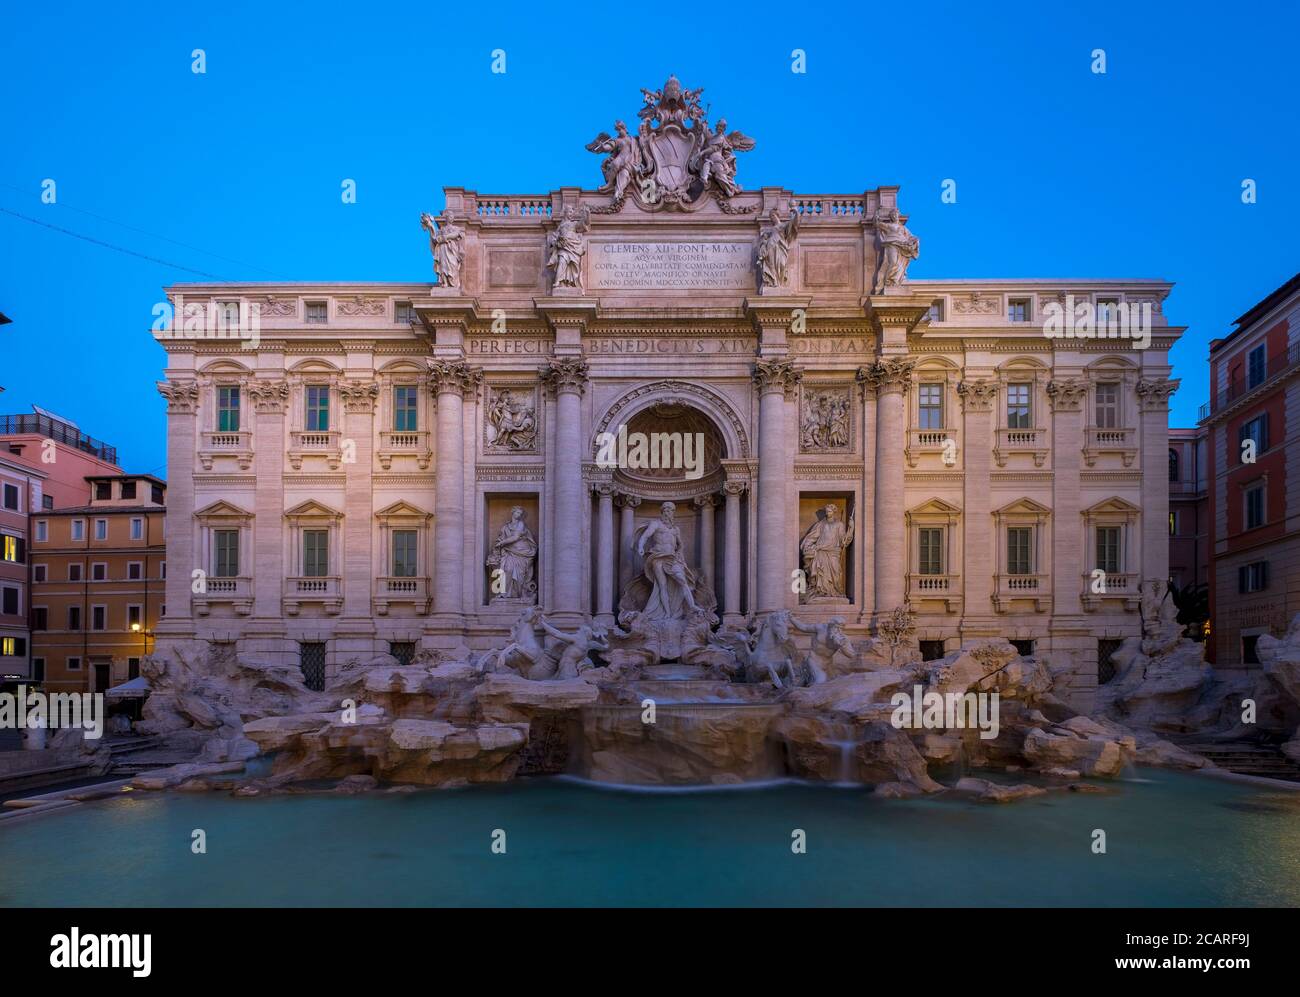 Fontaine de Trevi. Videz la fontaine de Trevi. Rome, Italie Banque D'Images